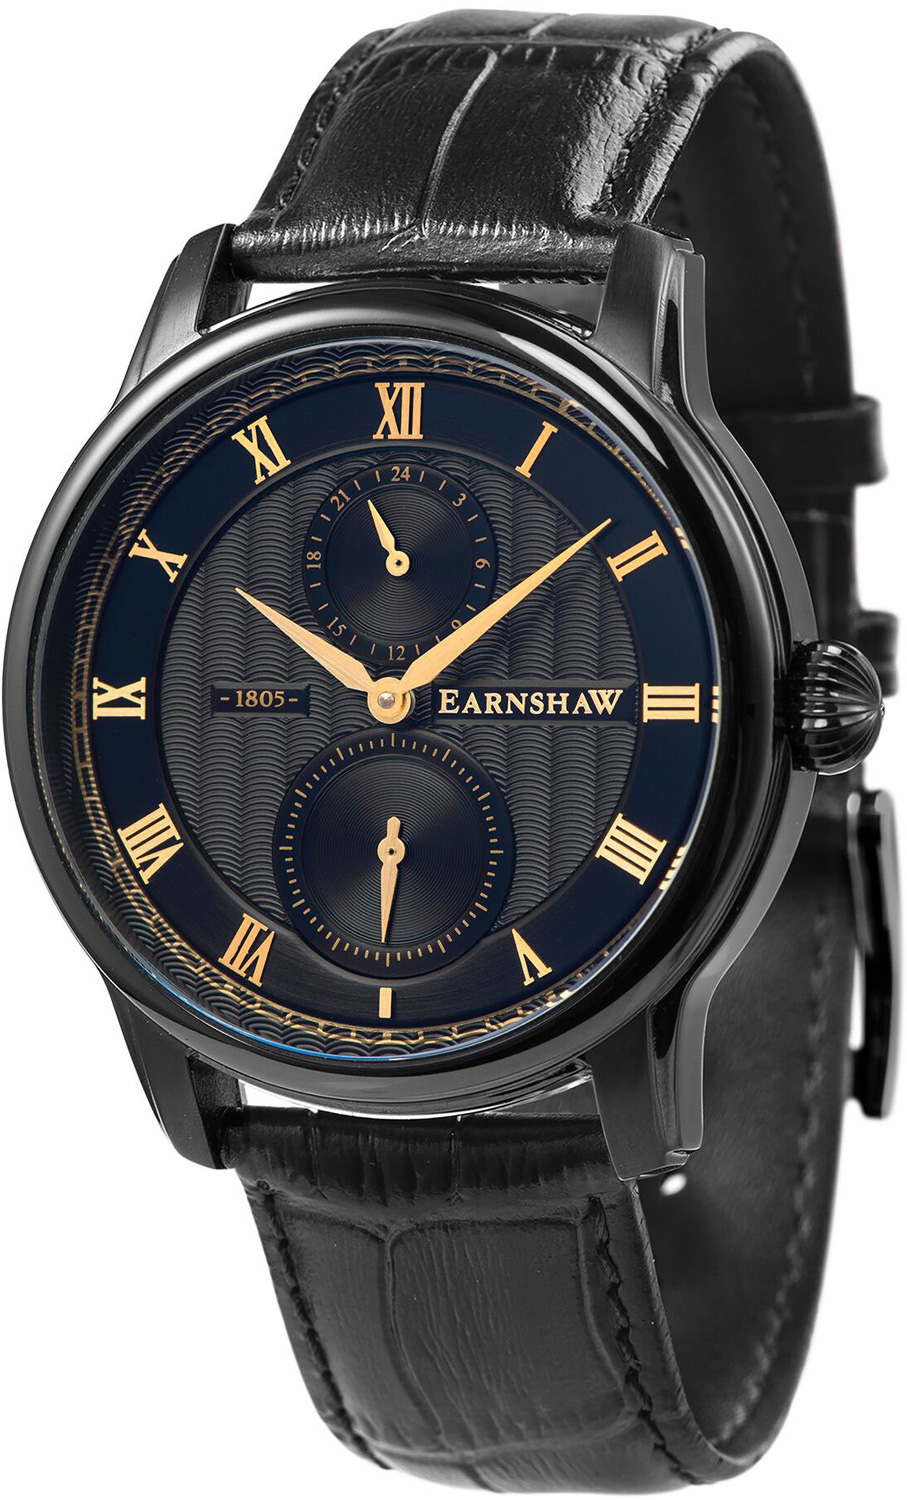   Earnshaw ES-8106-03